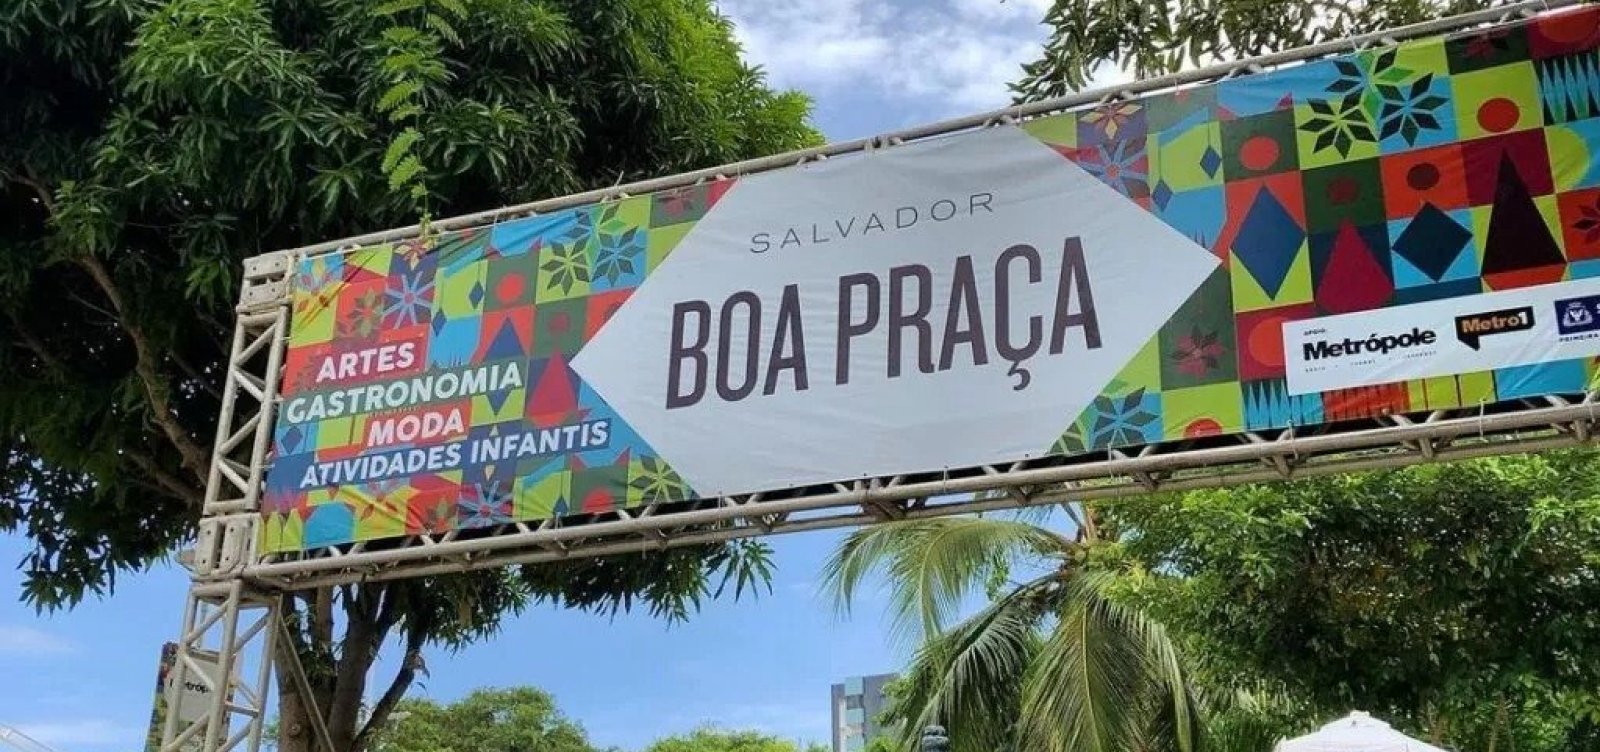 'Salvador Boa Praça' retoma programação com cinco edições em 2022